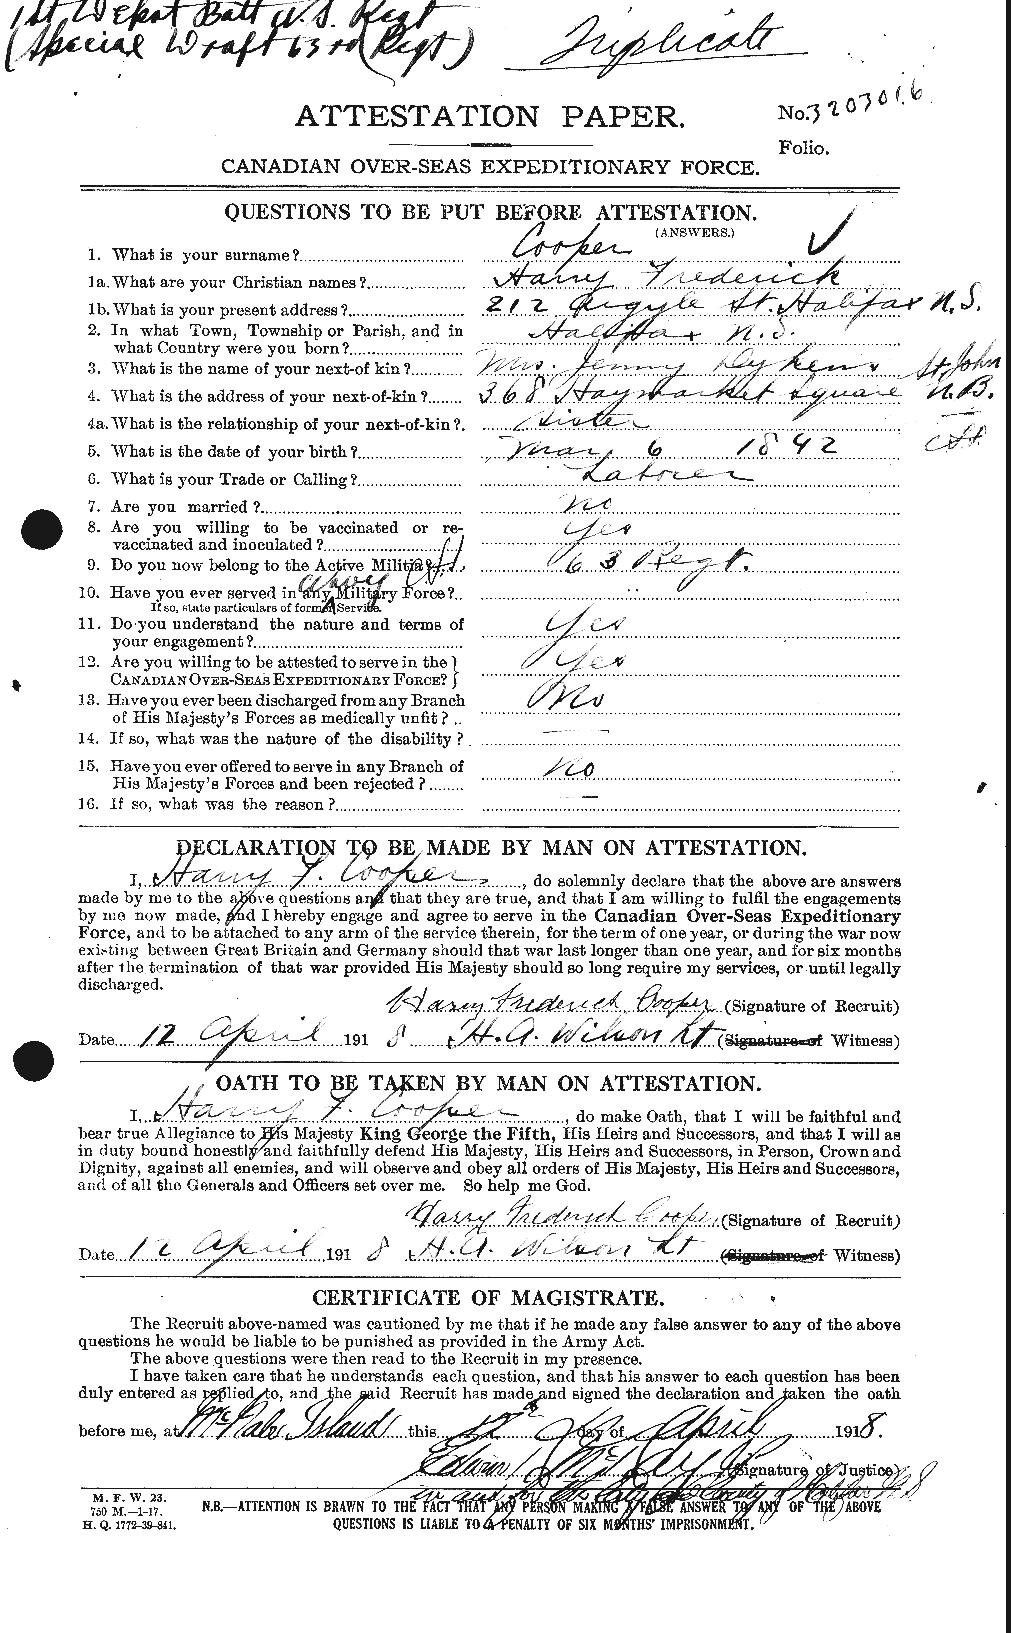 Dossiers du Personnel de la Première Guerre mondiale - CEC 057122a